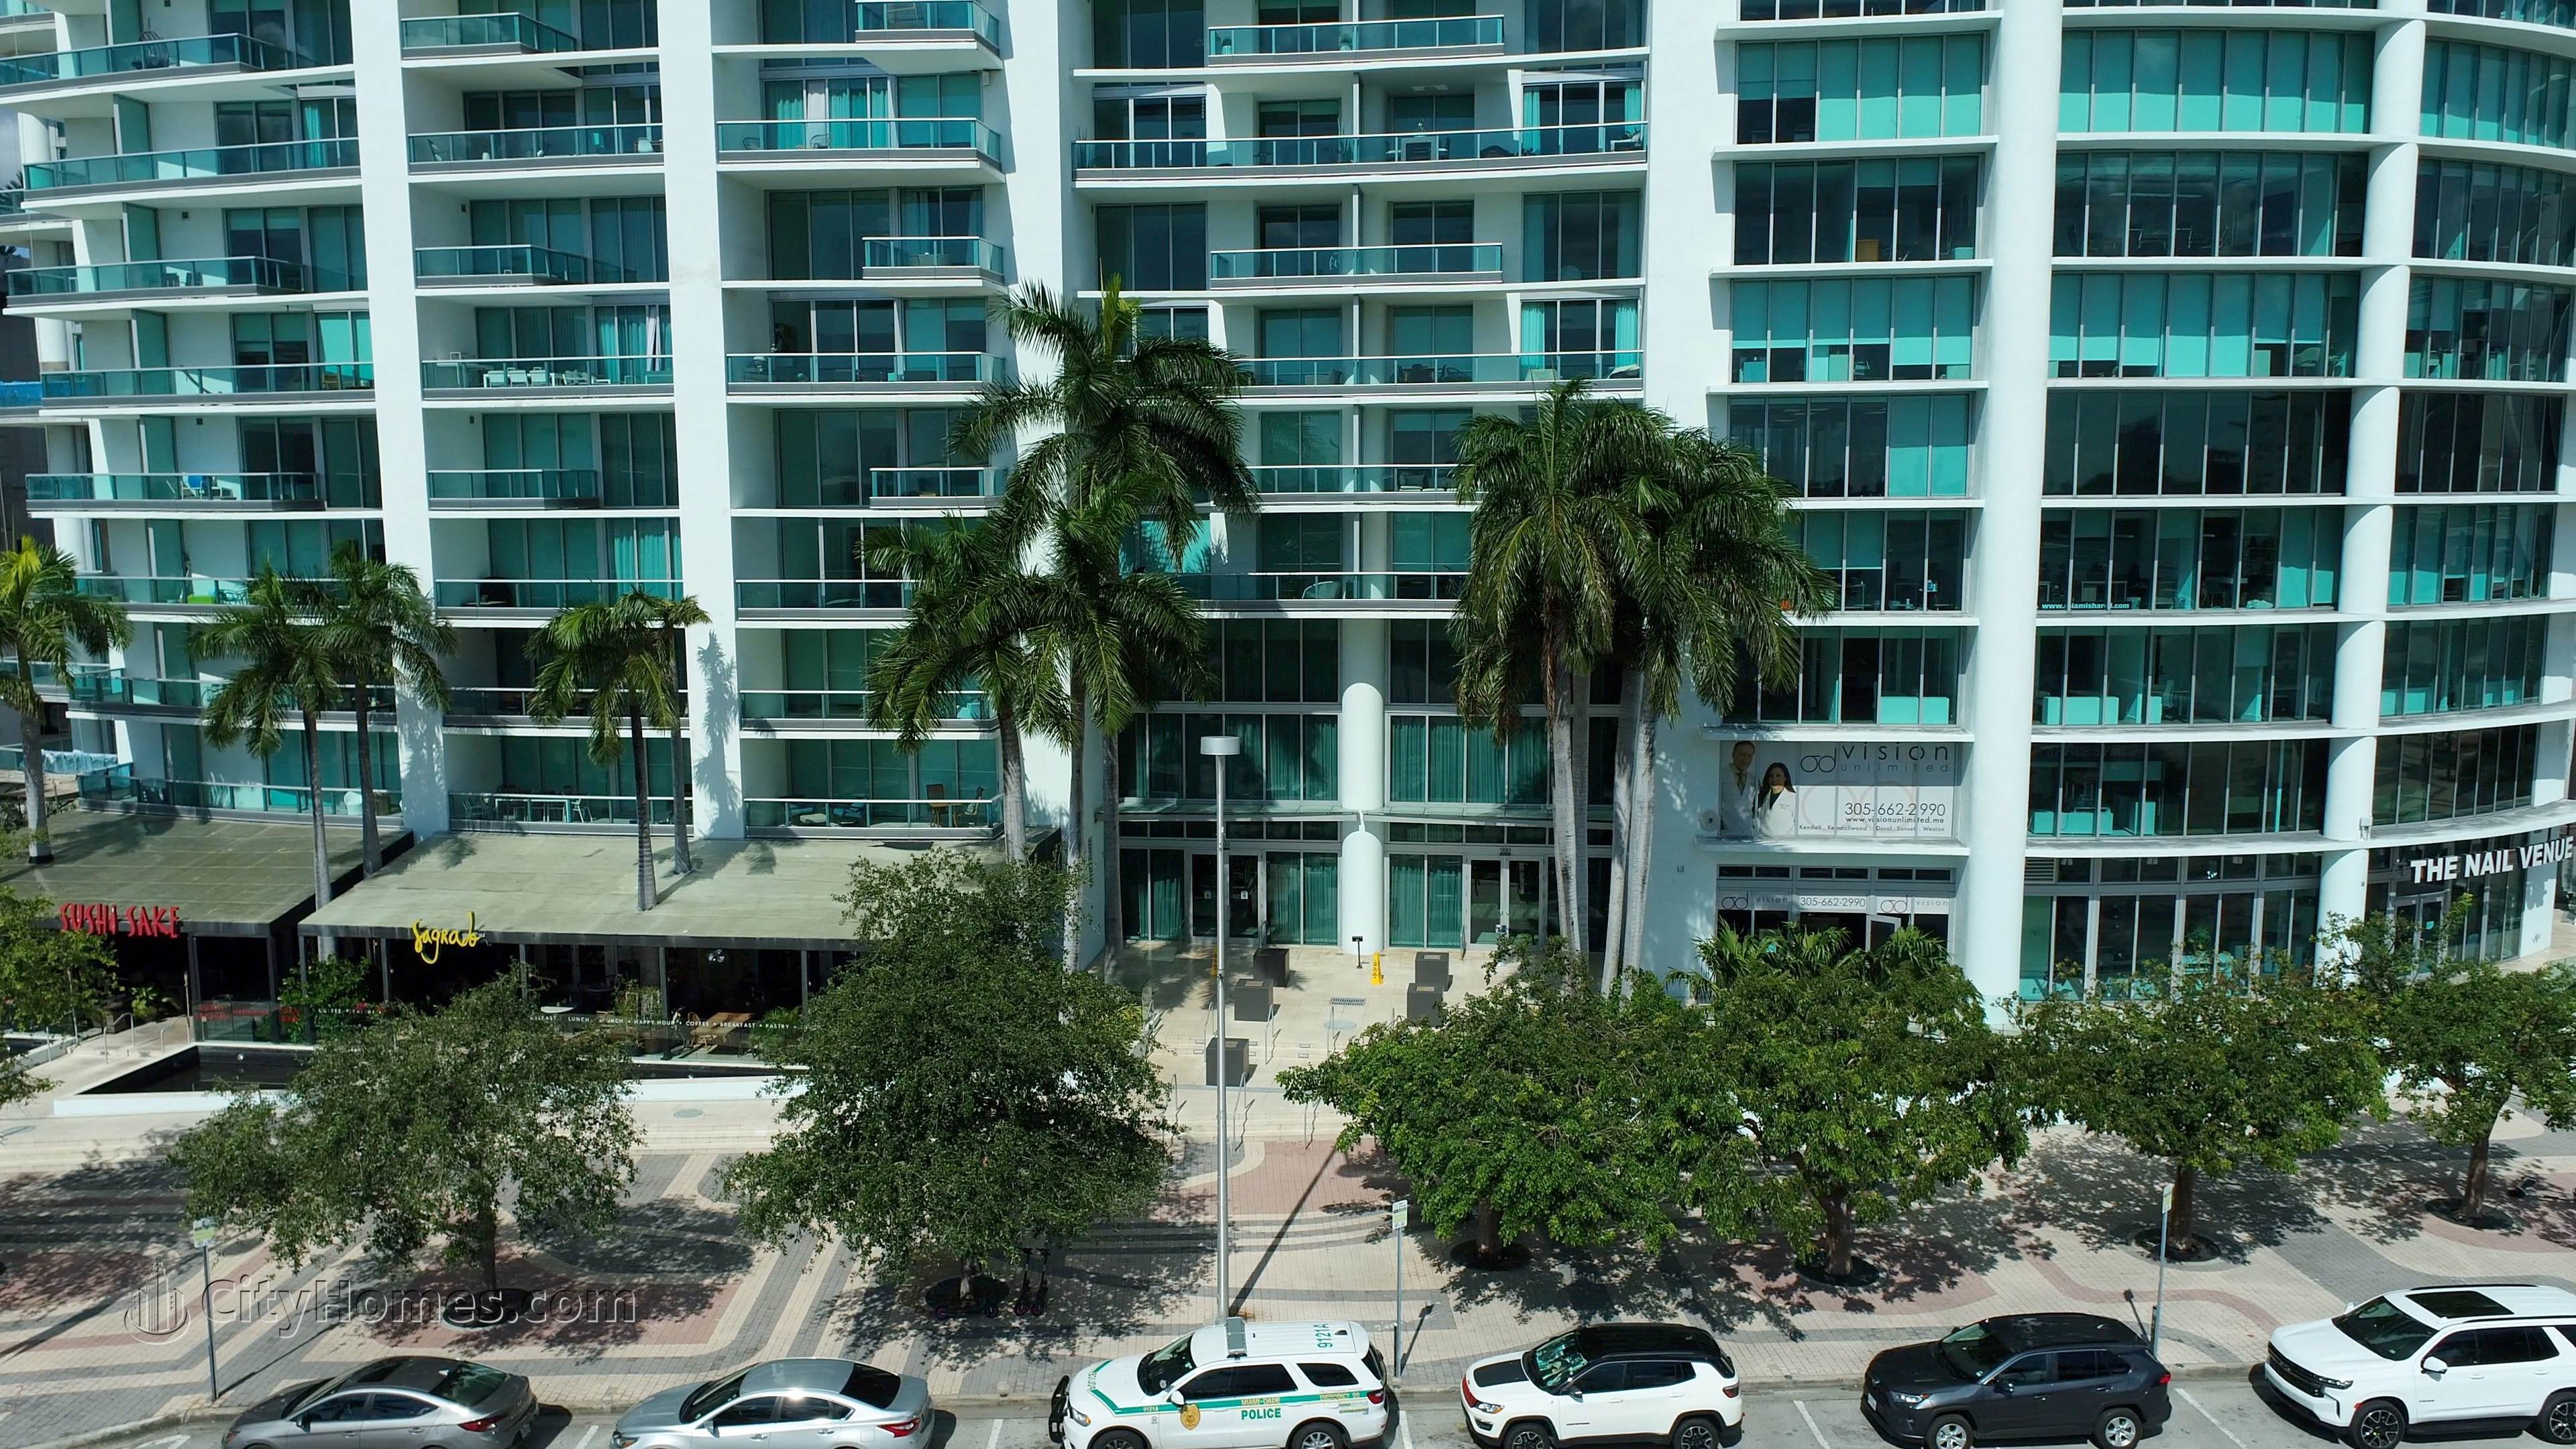 6. 900 Biscayne Bay Gebäude bei 900 Biscayne Boulevard, Miami, FL 33132